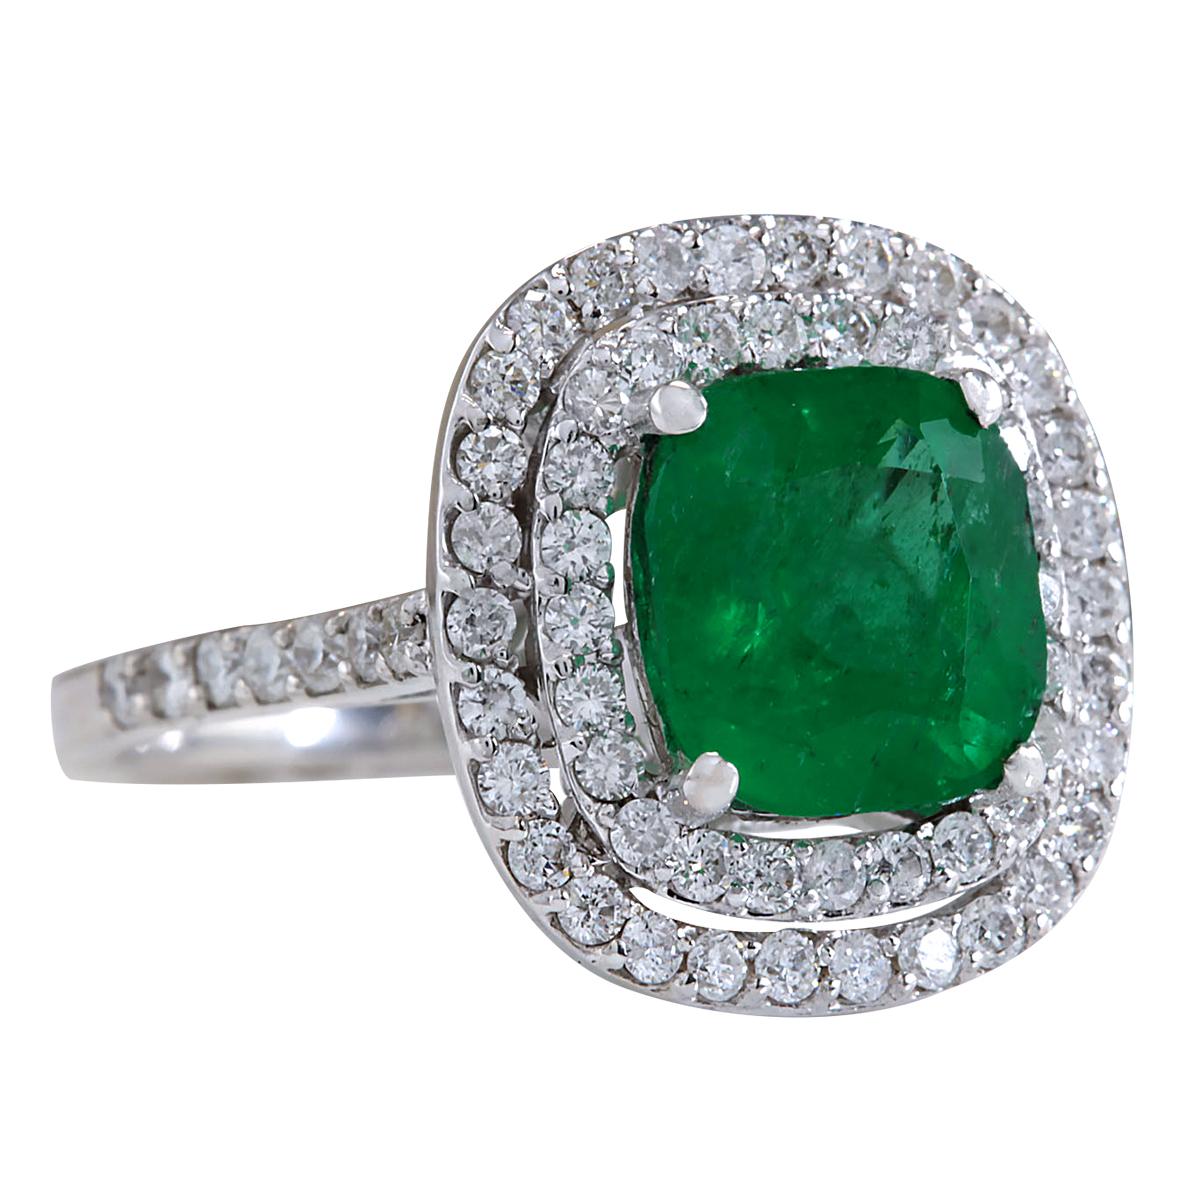 3.74 Carat Natural Emerald 14 Karat White Gold Diamond Ring
Stamped: 14K White Gold
Total Ring Weight: 5.2 Grams
Total Natural Emerald Weight is 2.74 Carat (Measures: 8.50x8.50 mm)
Color: Green
Total Natural Diamond Weight is 1.00 Carat
Color: F-G,